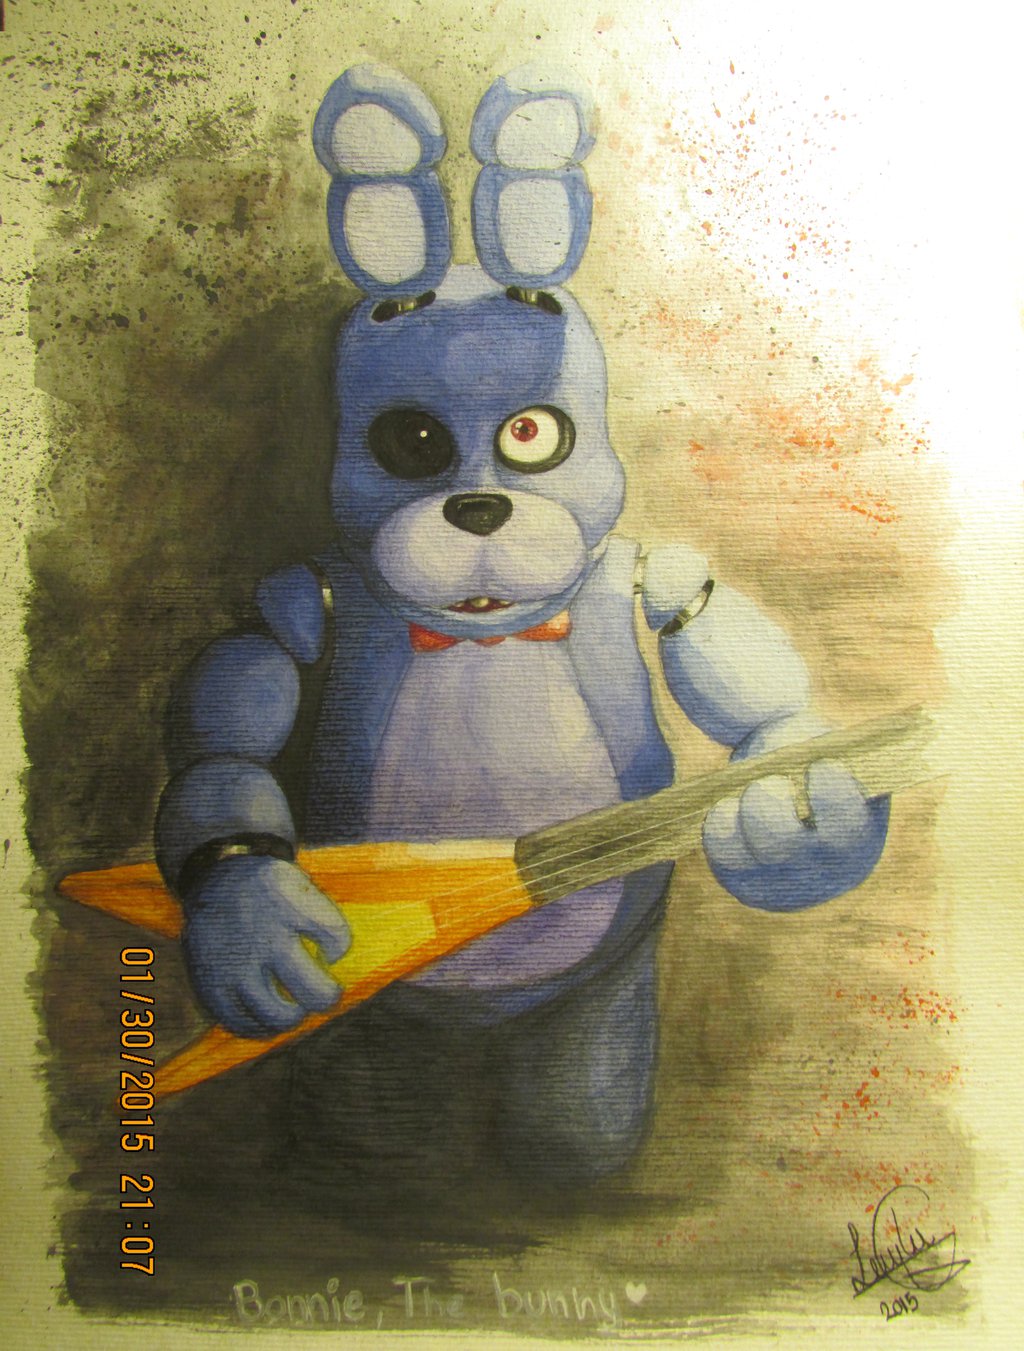 Bonnie The Bunny Fnaf By Leyvalquirie